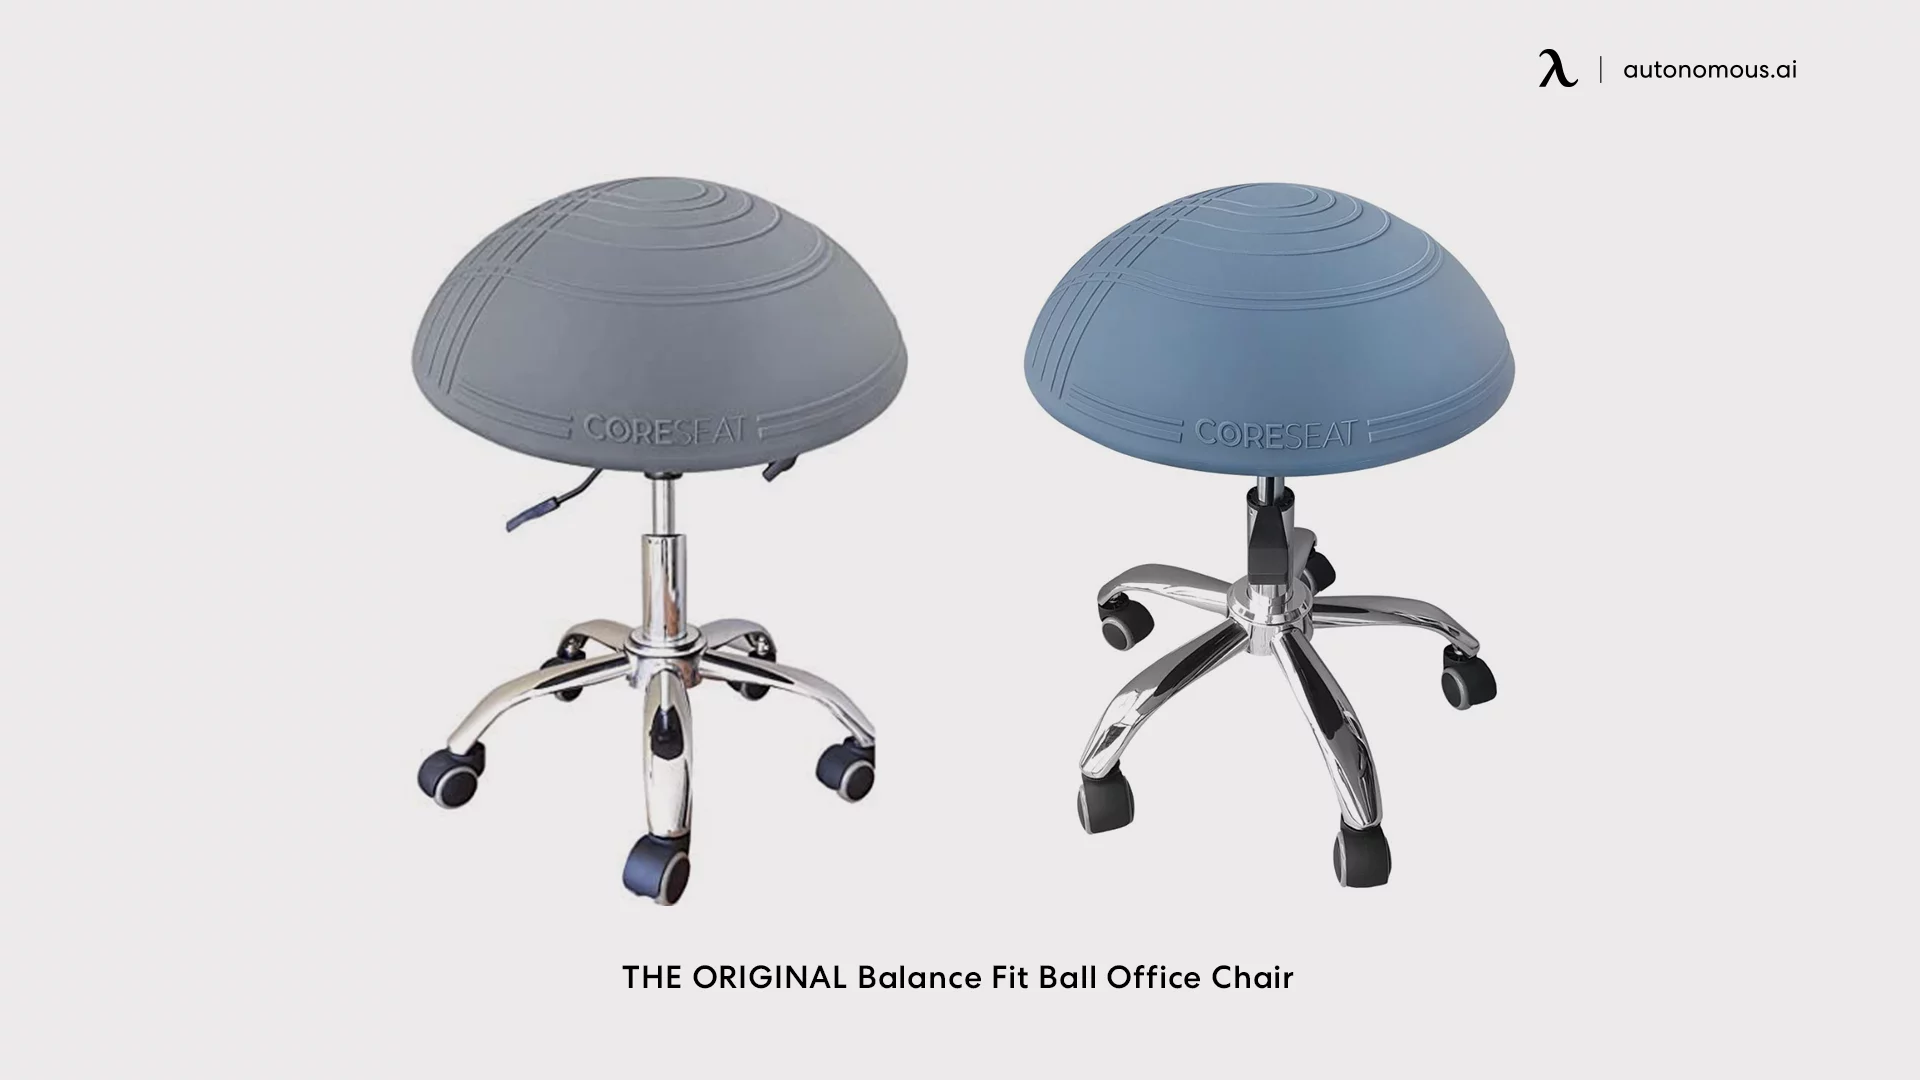 Balance Fit Ball Office Chair (Original)